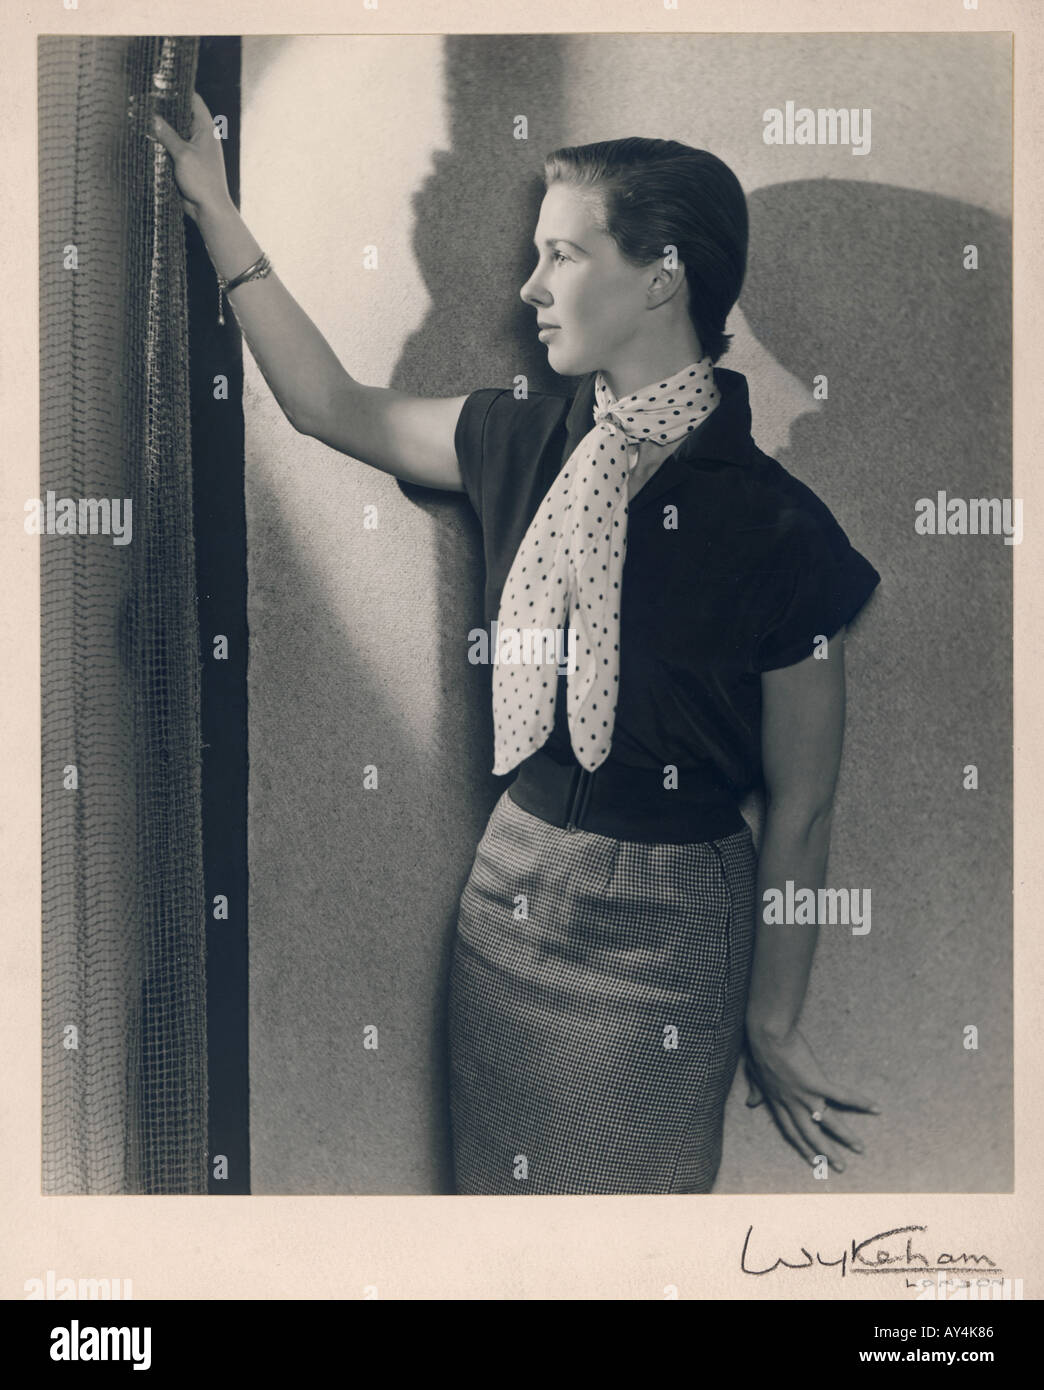 1950s Girl By Wykeham Stock Photo